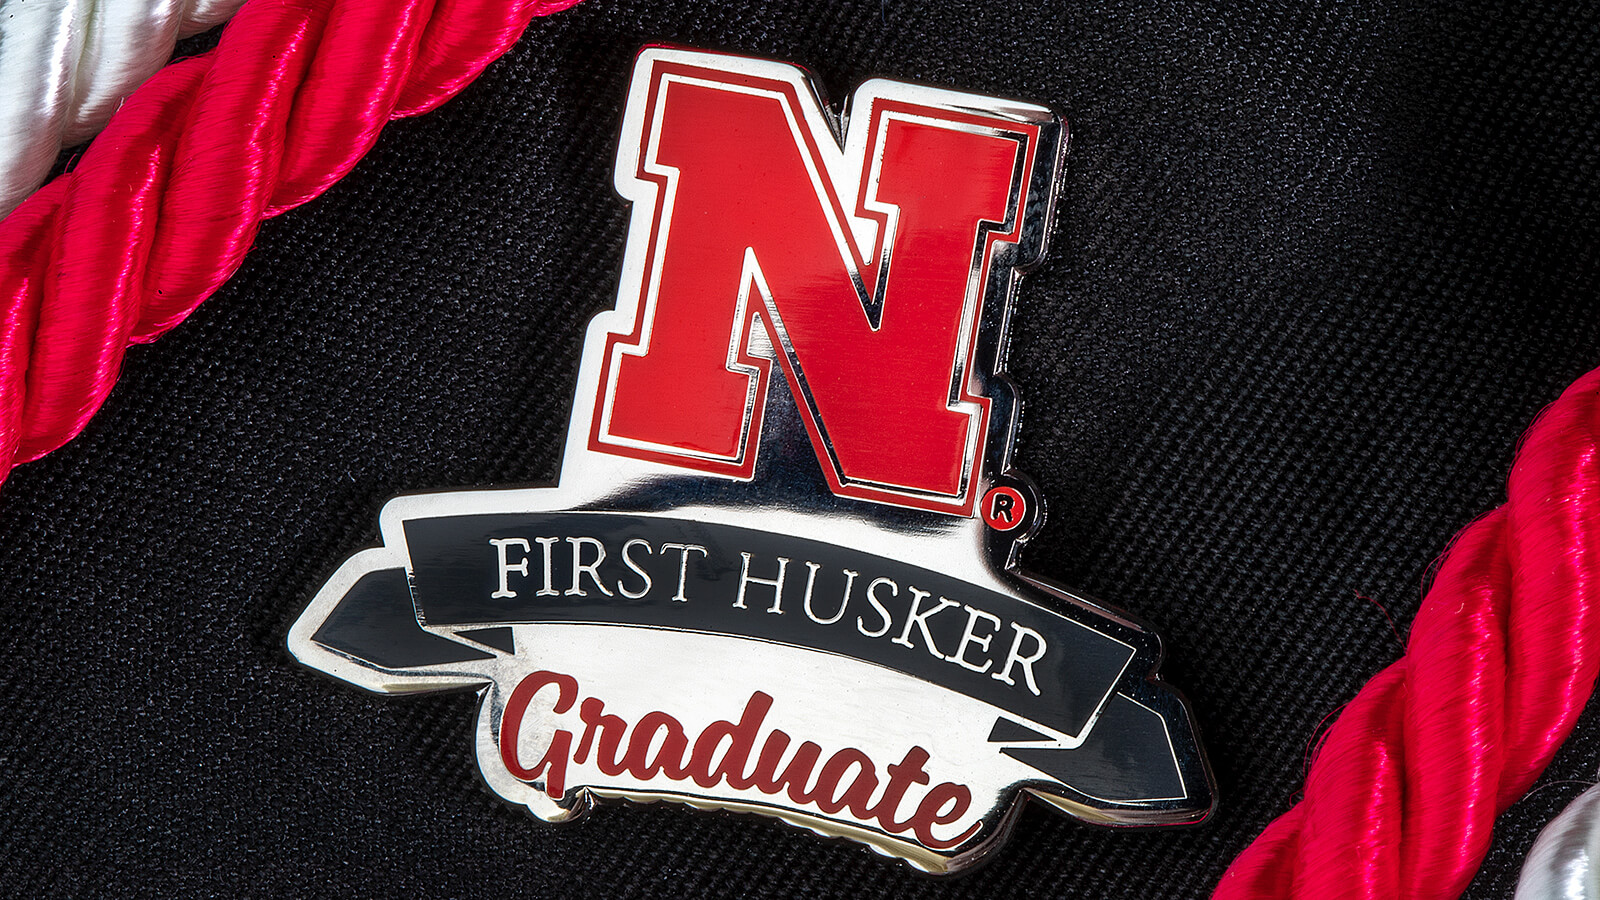 First Husker Graduate pin.